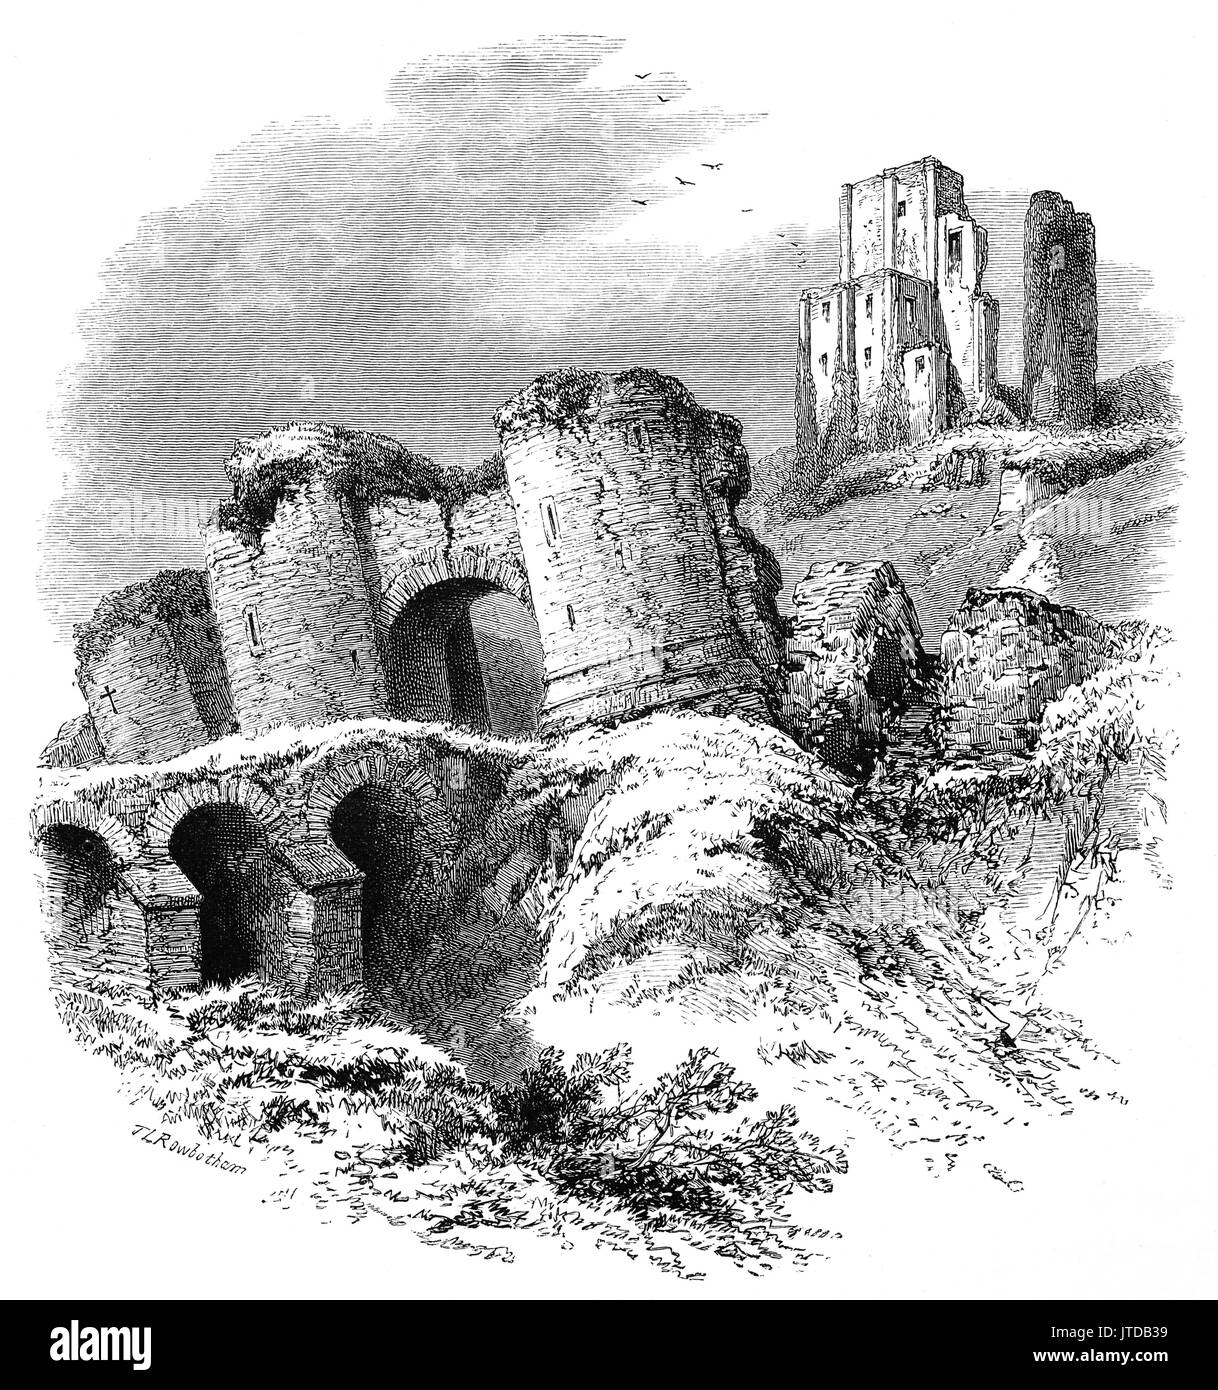 1870 : Le 10e siècle ruines du château de Corfe qui se dresse au-dessus du village du même nom. Il a été le site de l'assassinat d'Édouard le martyr en 978. Pendant la guerre civile anglaise c'était un bastion royaliste et fut assiégée à deux reprises, en 1643 et de nouveau en 1646. Dorsetshire, Angleterre Banque D'Images